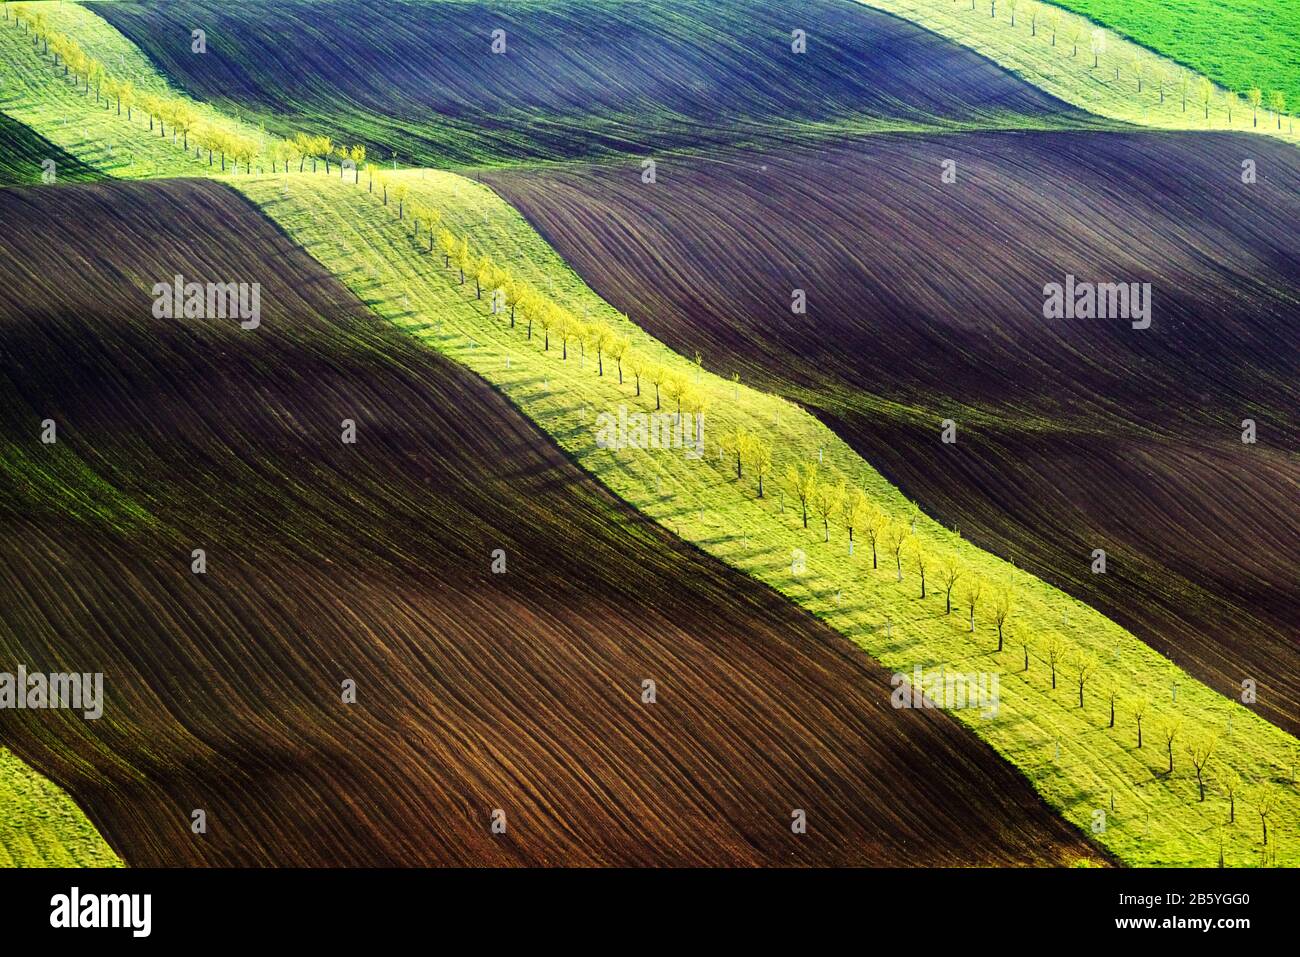 Vagues vertes et brunes des champs agricoles de la Moravie du Sud, République tchèque. Paysage rural de printemps avec des collines colorées à rayures. Peut être utilisé comme fond de nature ou texture Banque D'Images